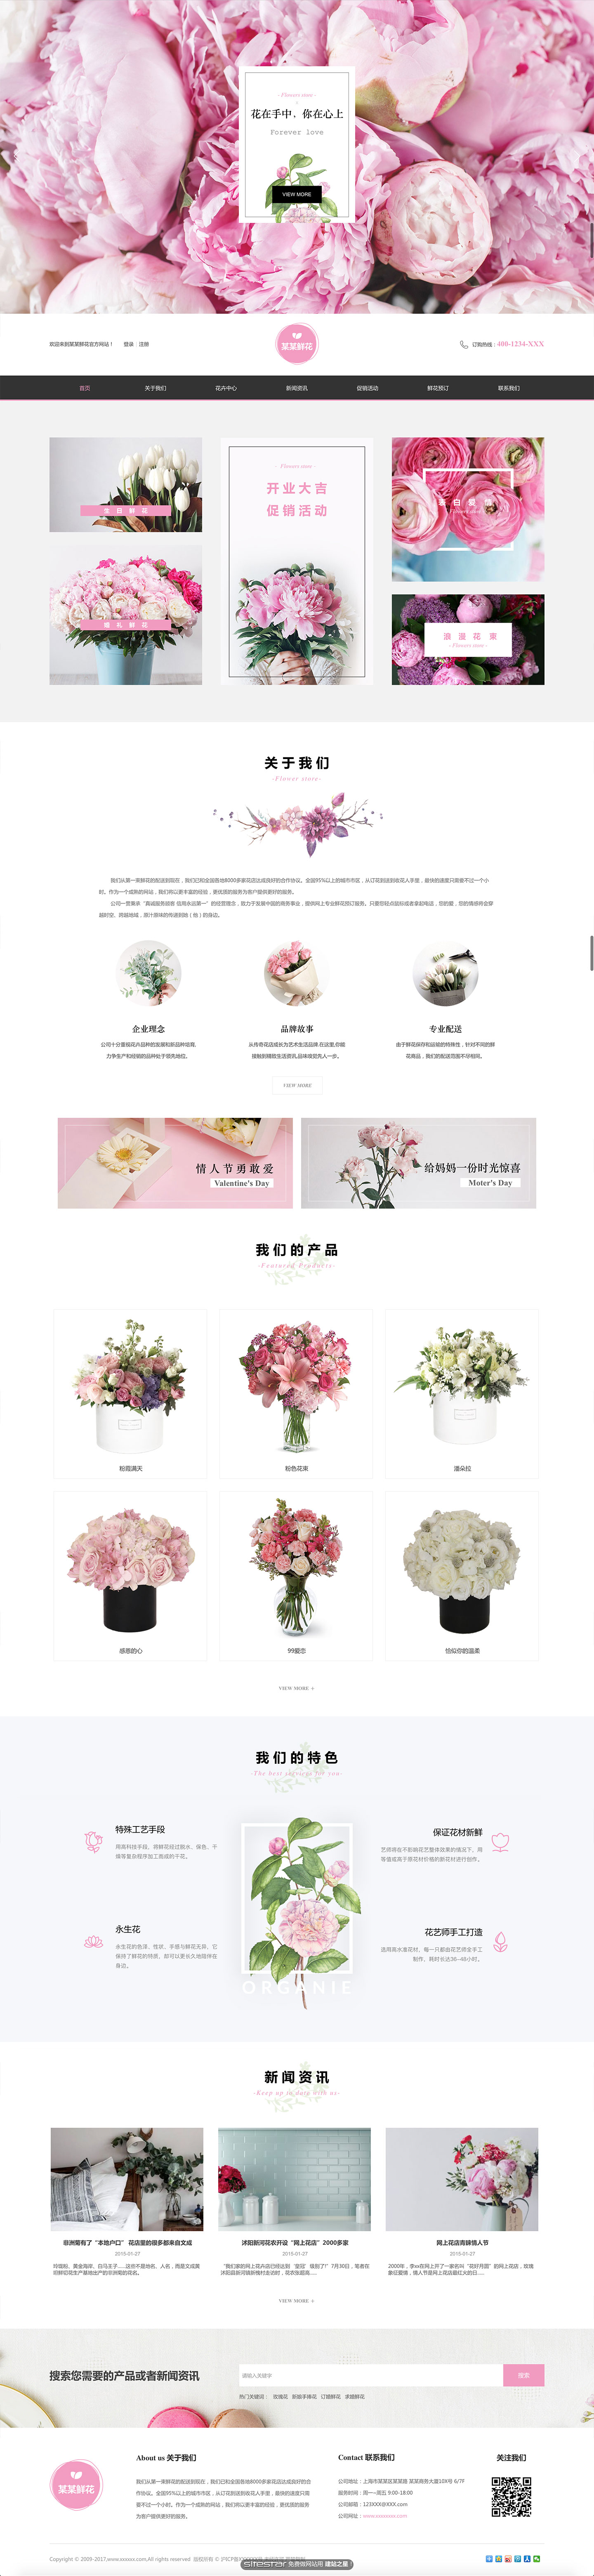 鲜花网站模板-flowers-1135697